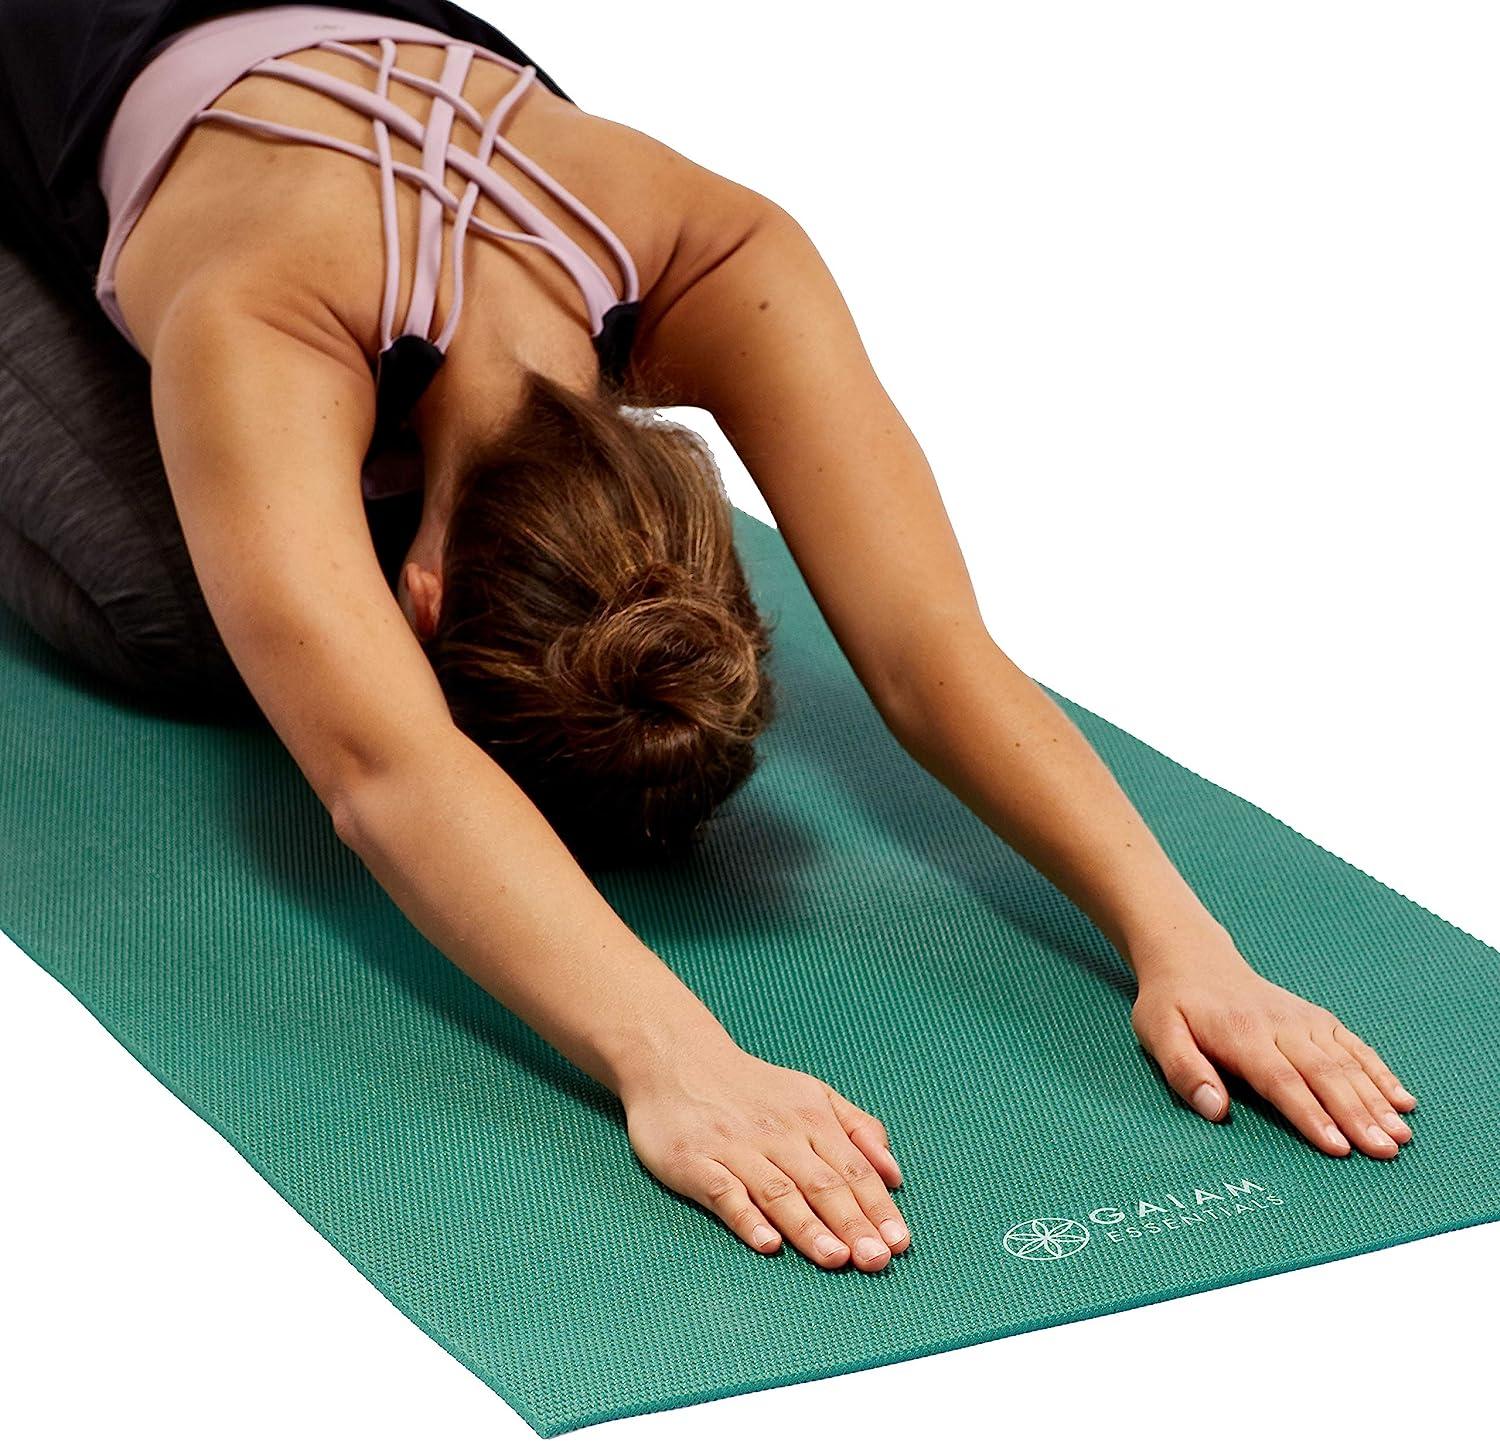 Gaiam Studio Select Premium Yoga Mat, 6mm, PVC, Reversible